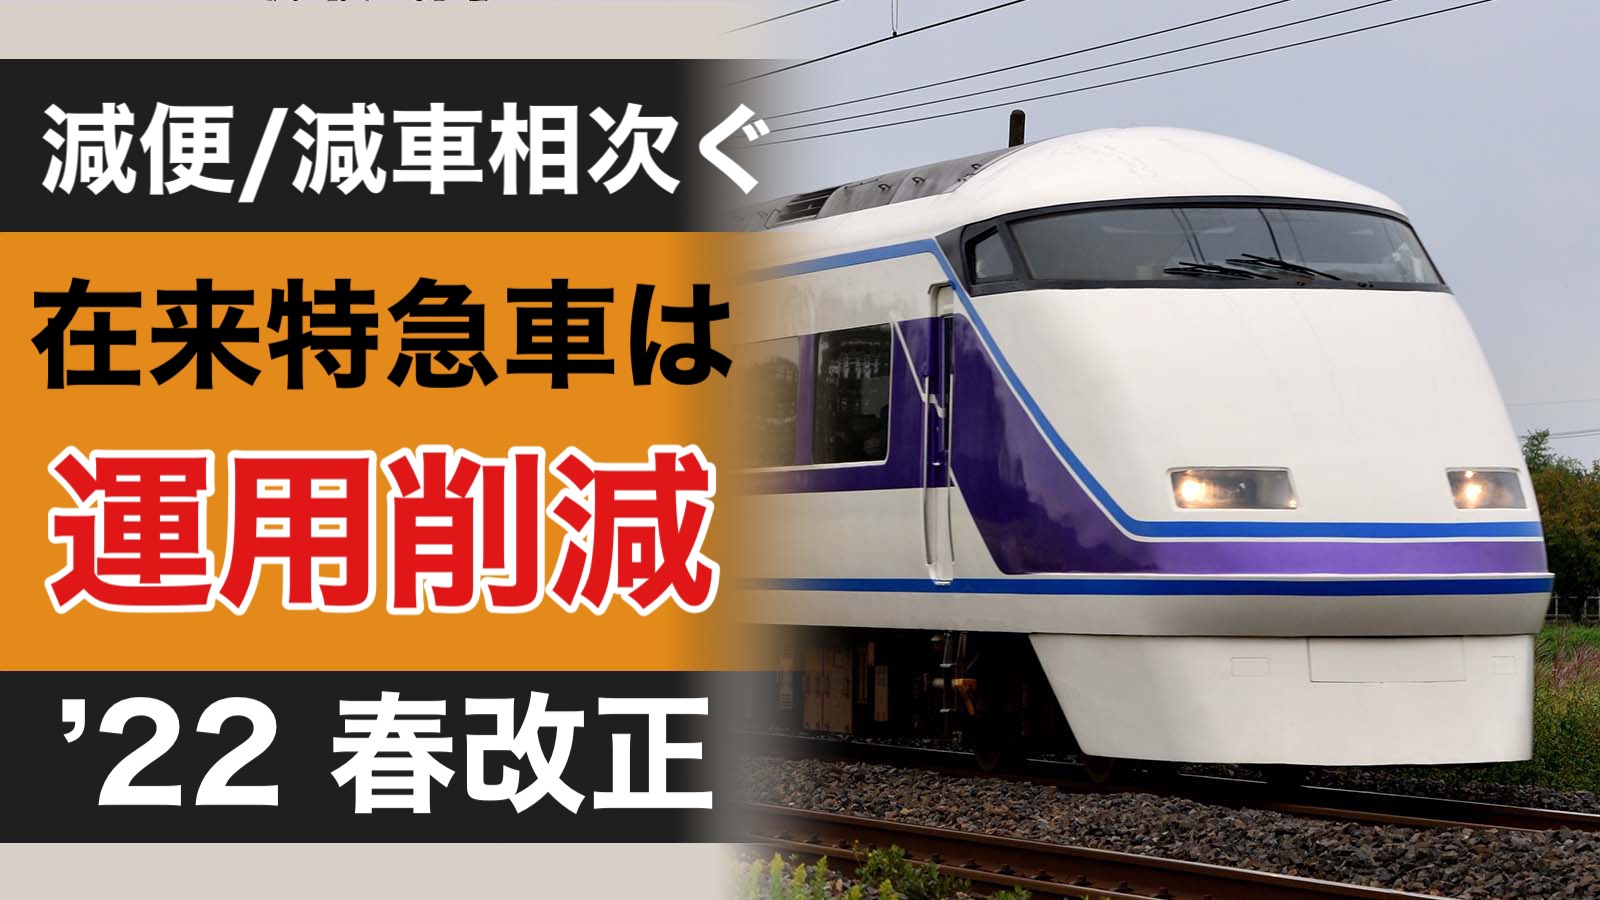 東武 鉄道 時刻 表 2022